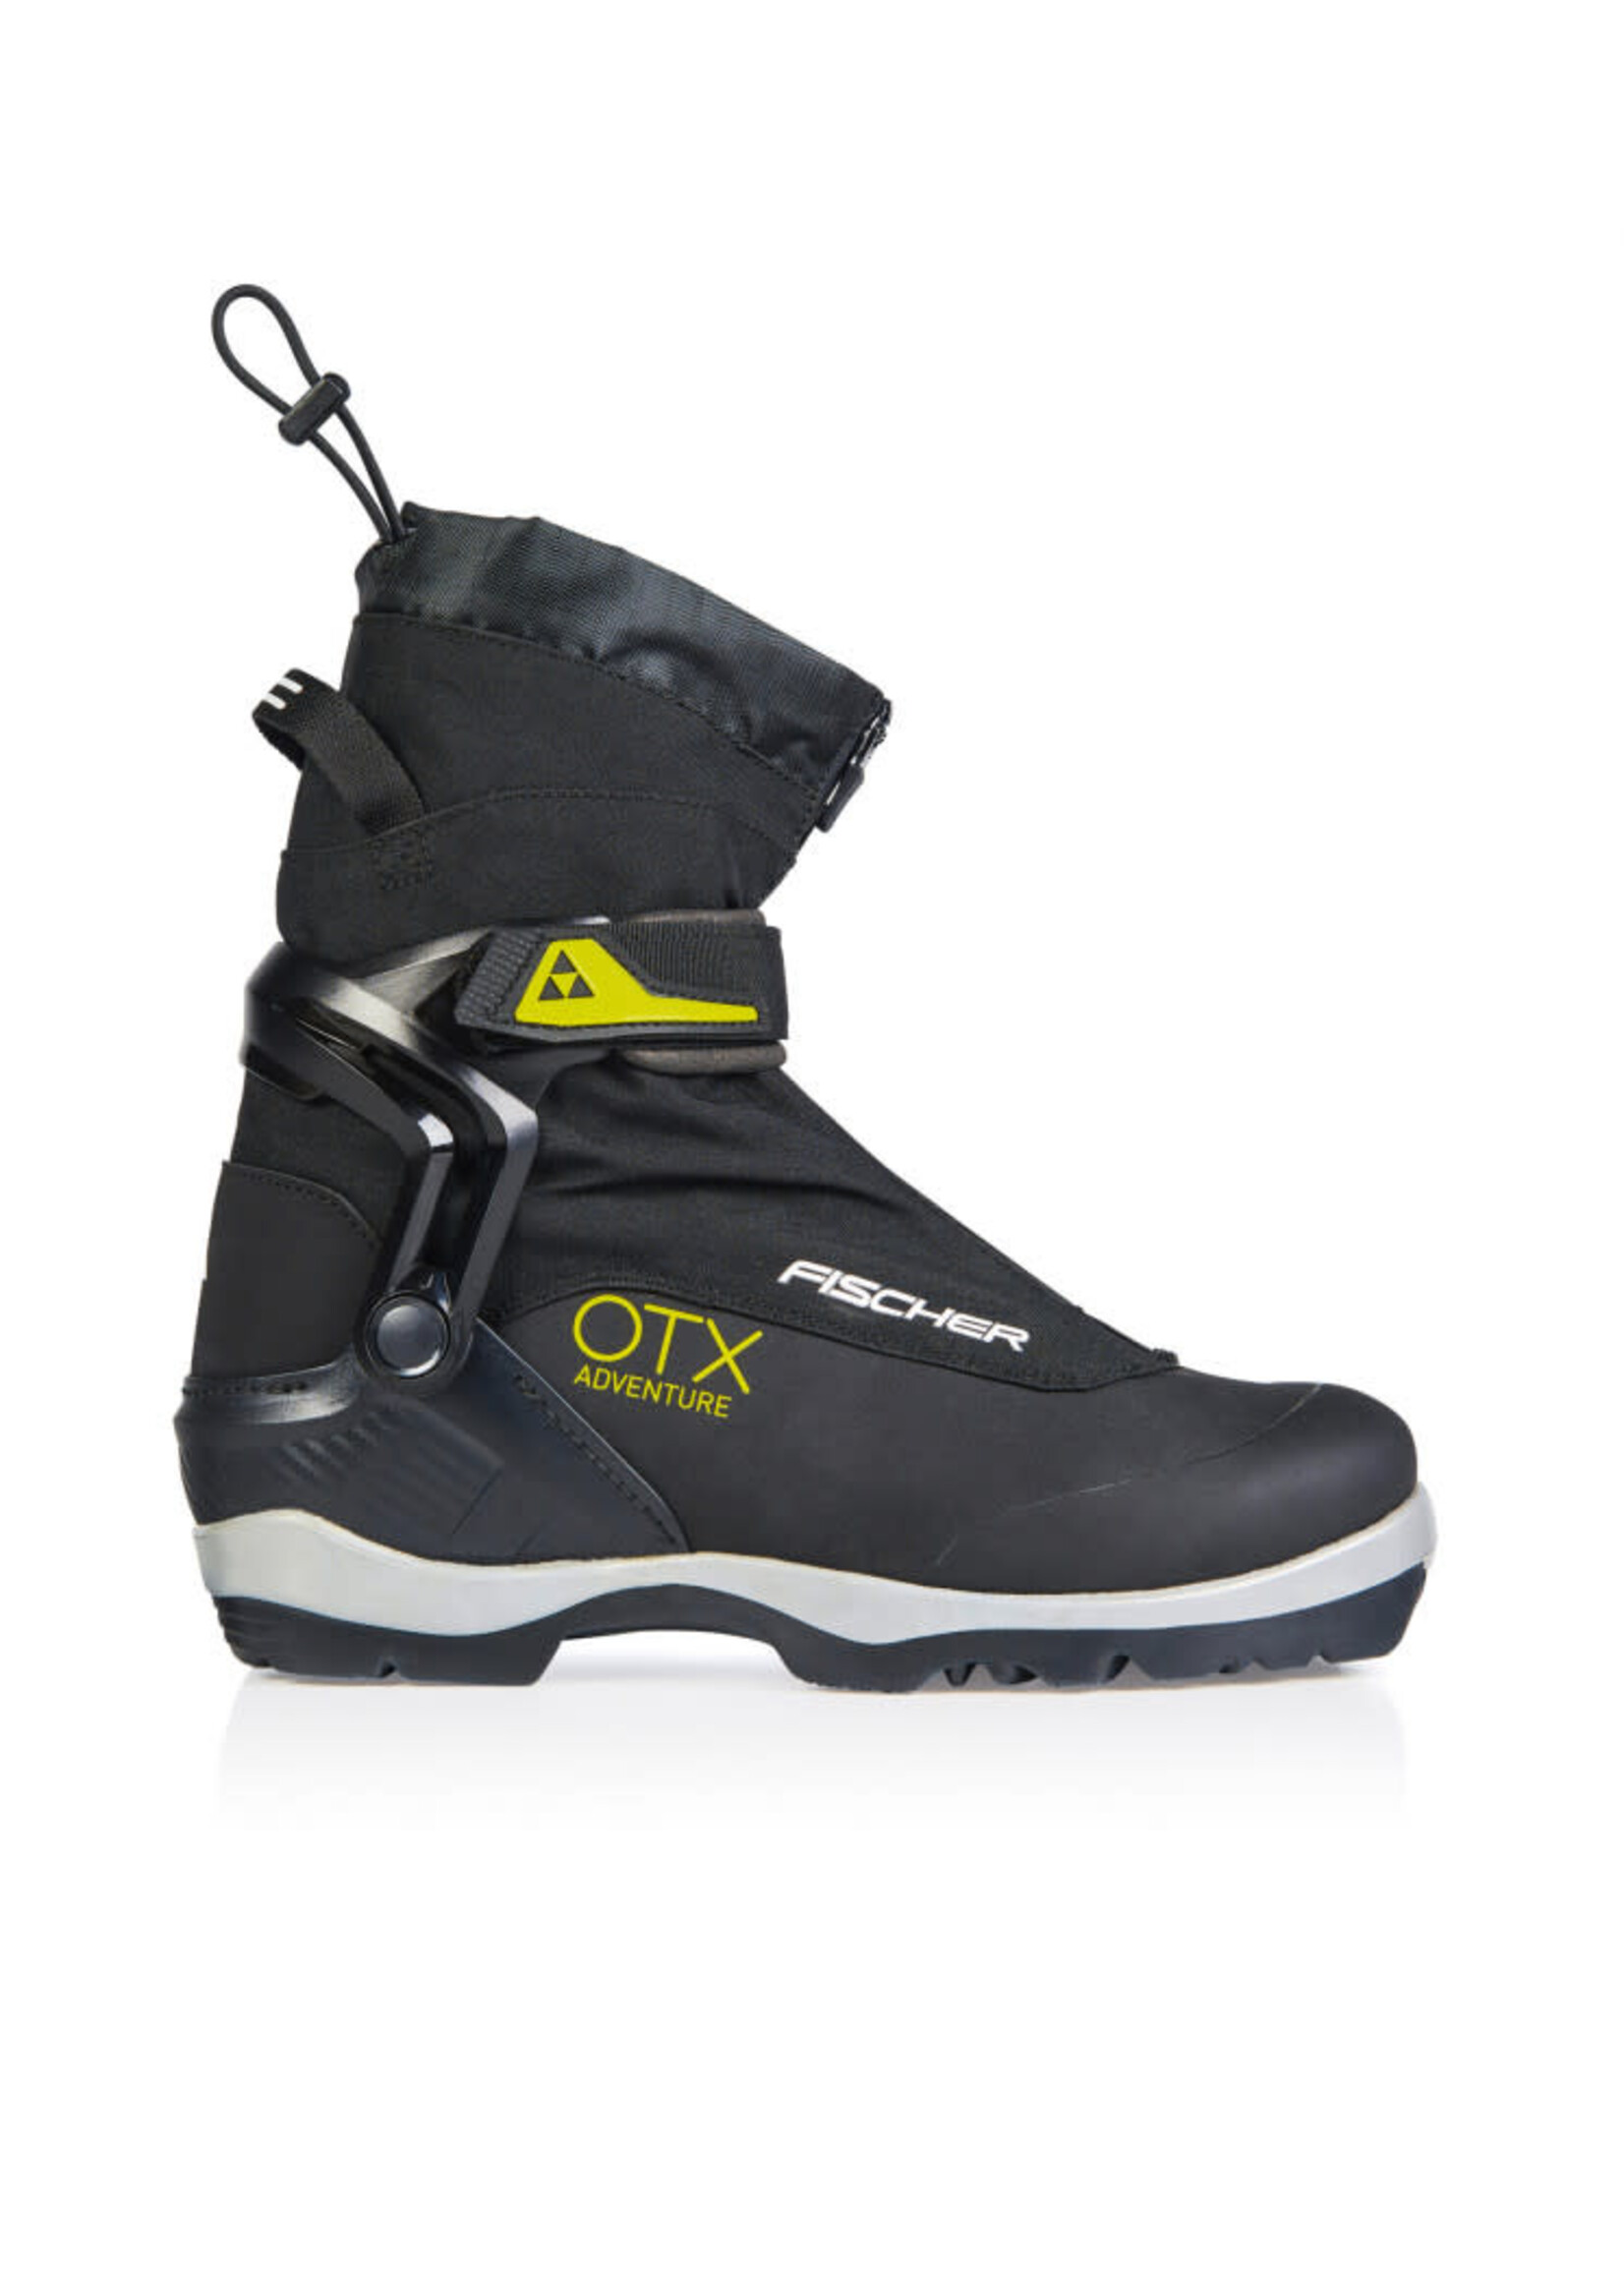 Fischer Fischer OTX Adventure Nordic BC Boots